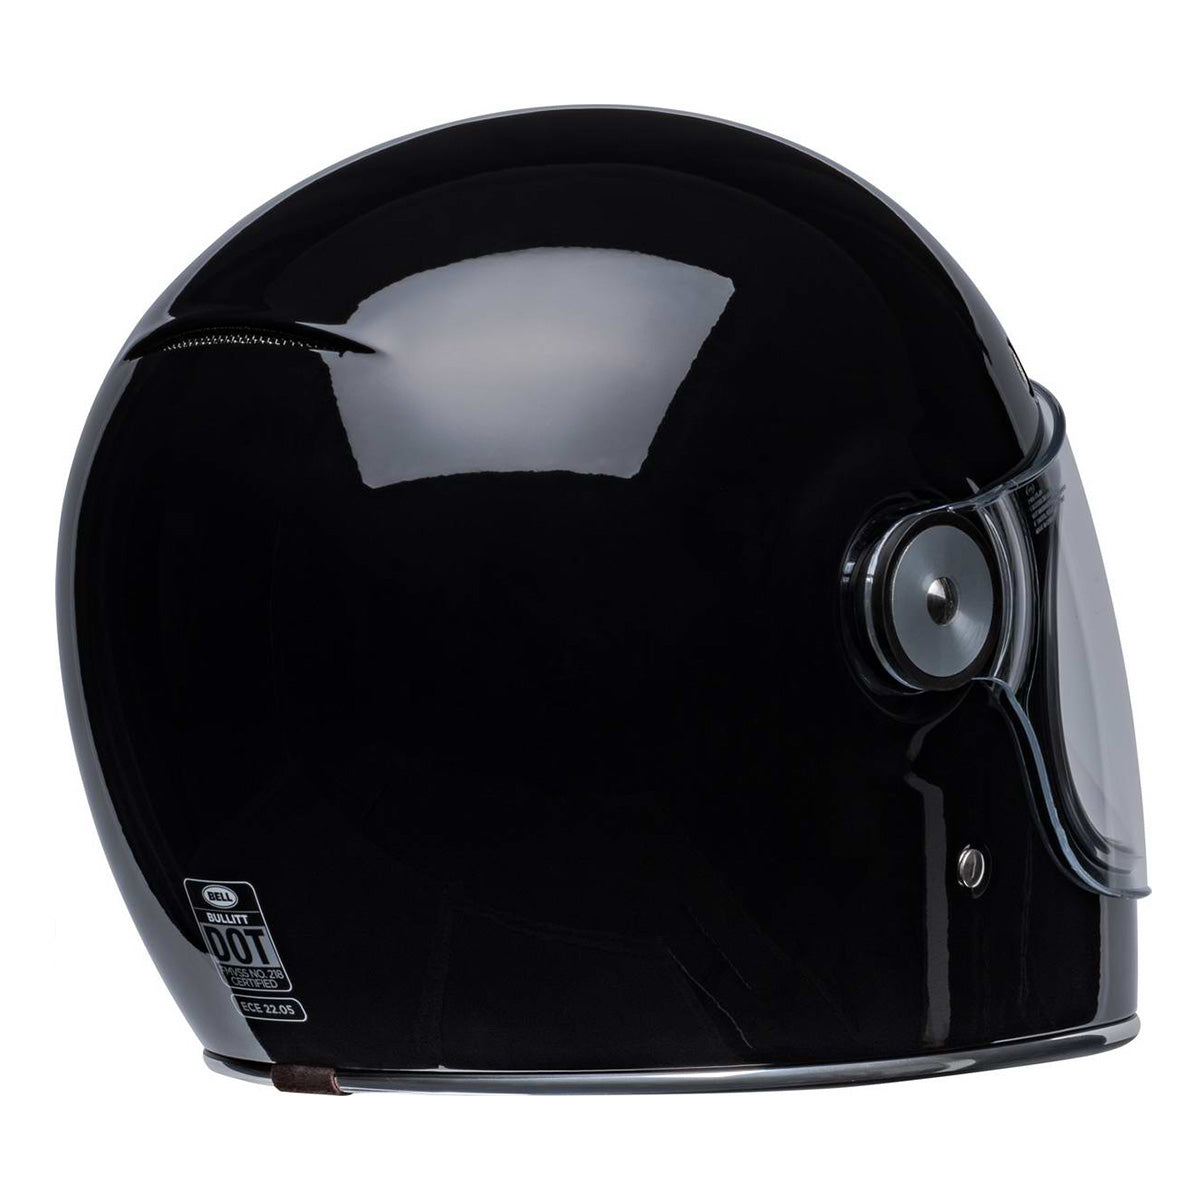 Bell Bullitt Modern Classic Solid Gloss Black Full-Face Helmet